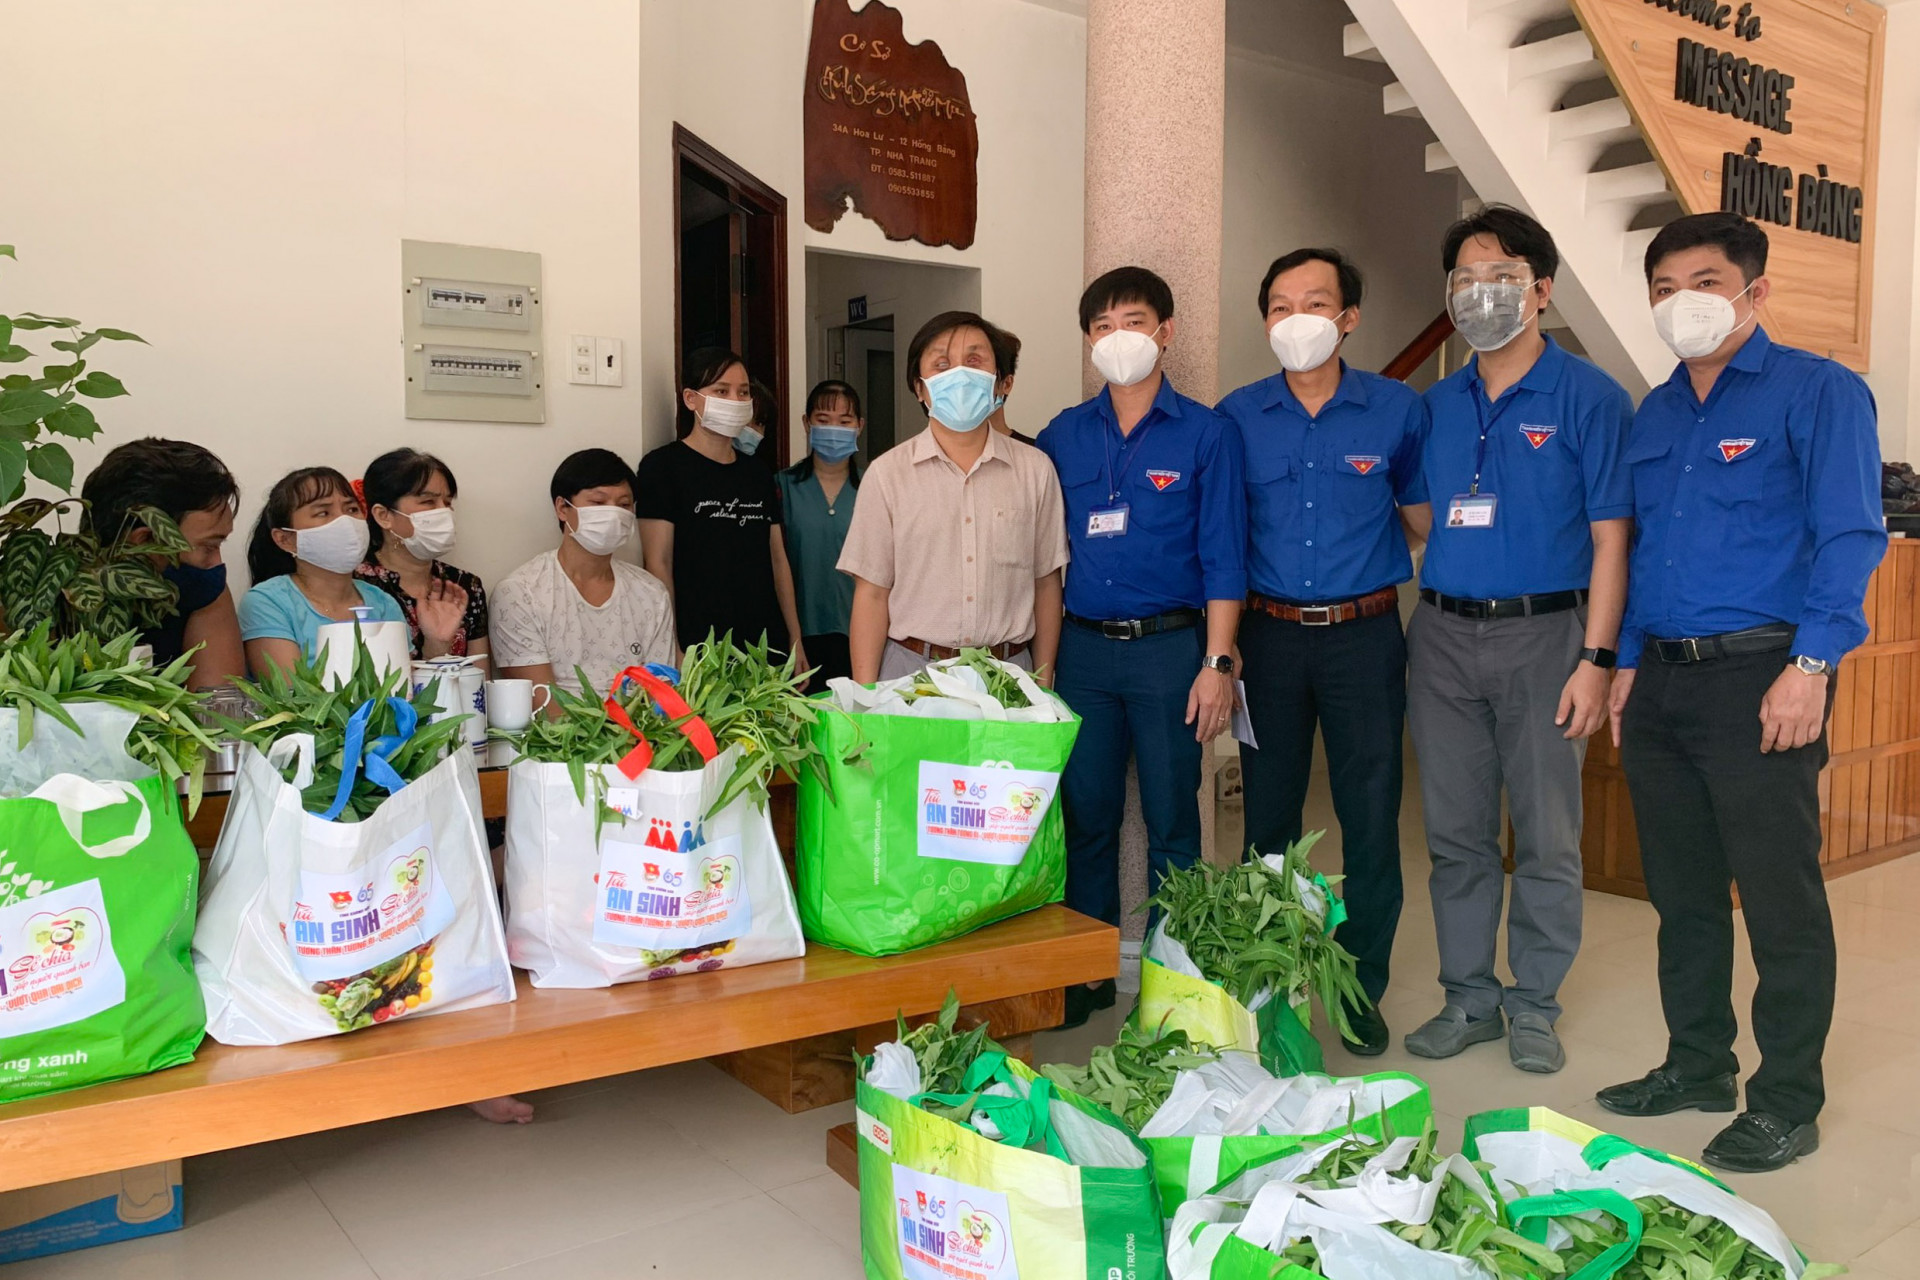 Tỉnh đoàn trao quà hỗ trợ những người khiếm thị gặp khó khăn do dịch Covid-19 đang làm việc tại một cơ sở massage trên đường Hồng Bàng